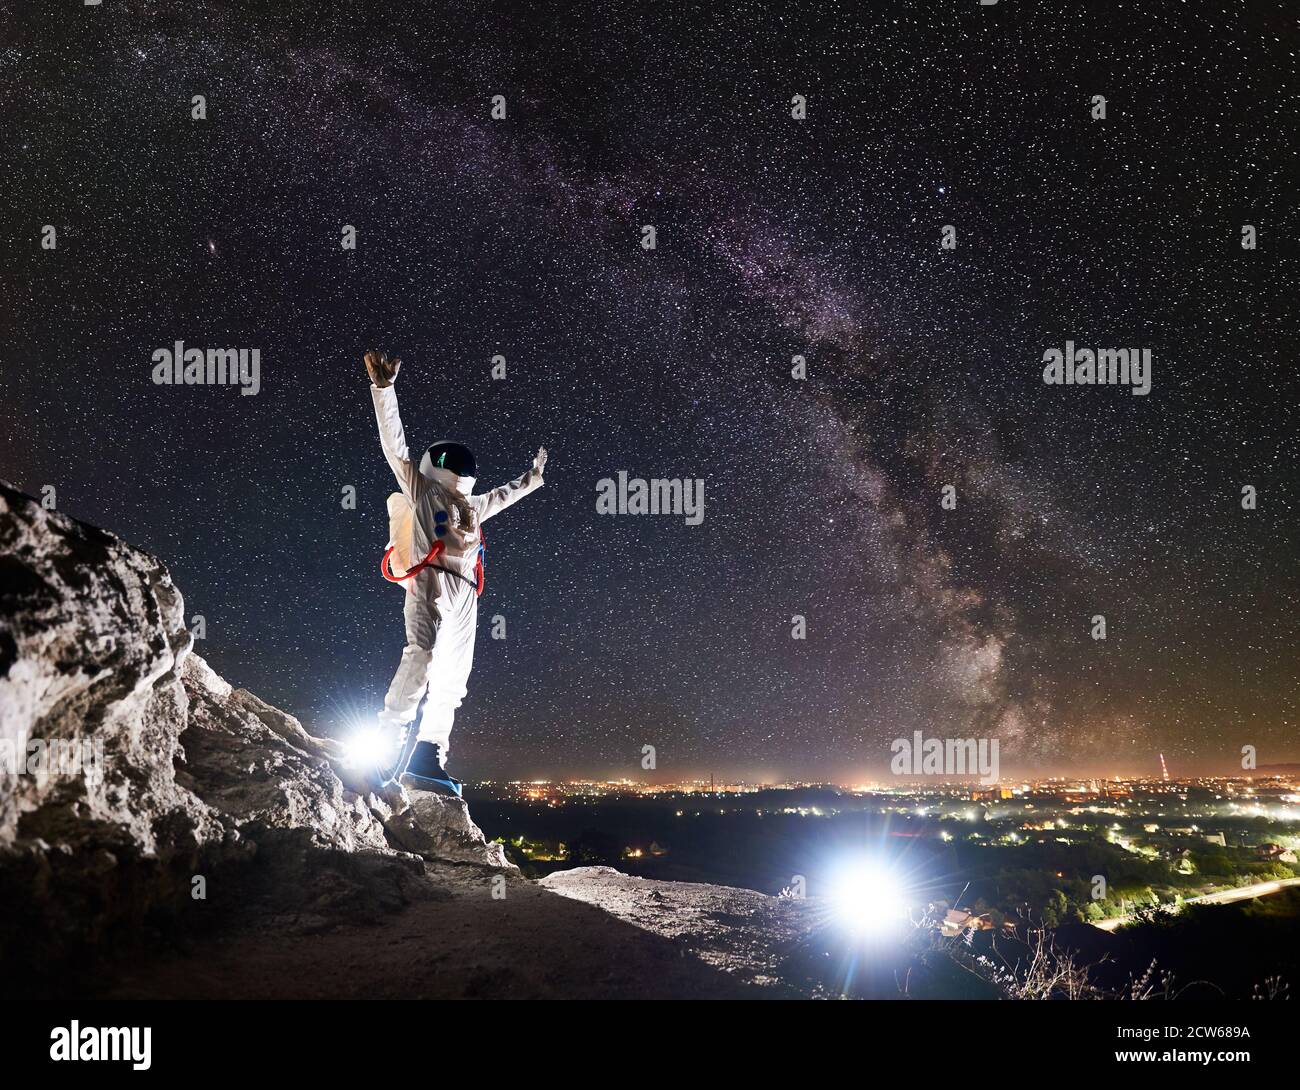 Astronaut hebt die Arme, während sie auf einem felsigen Berg mit fantastischem Sternenhimmel und Milchstraße im Hintergrund steht. Spaceman trägt weißen Raumanzug und Helm. Konzept der Raumfahrt Stockfoto